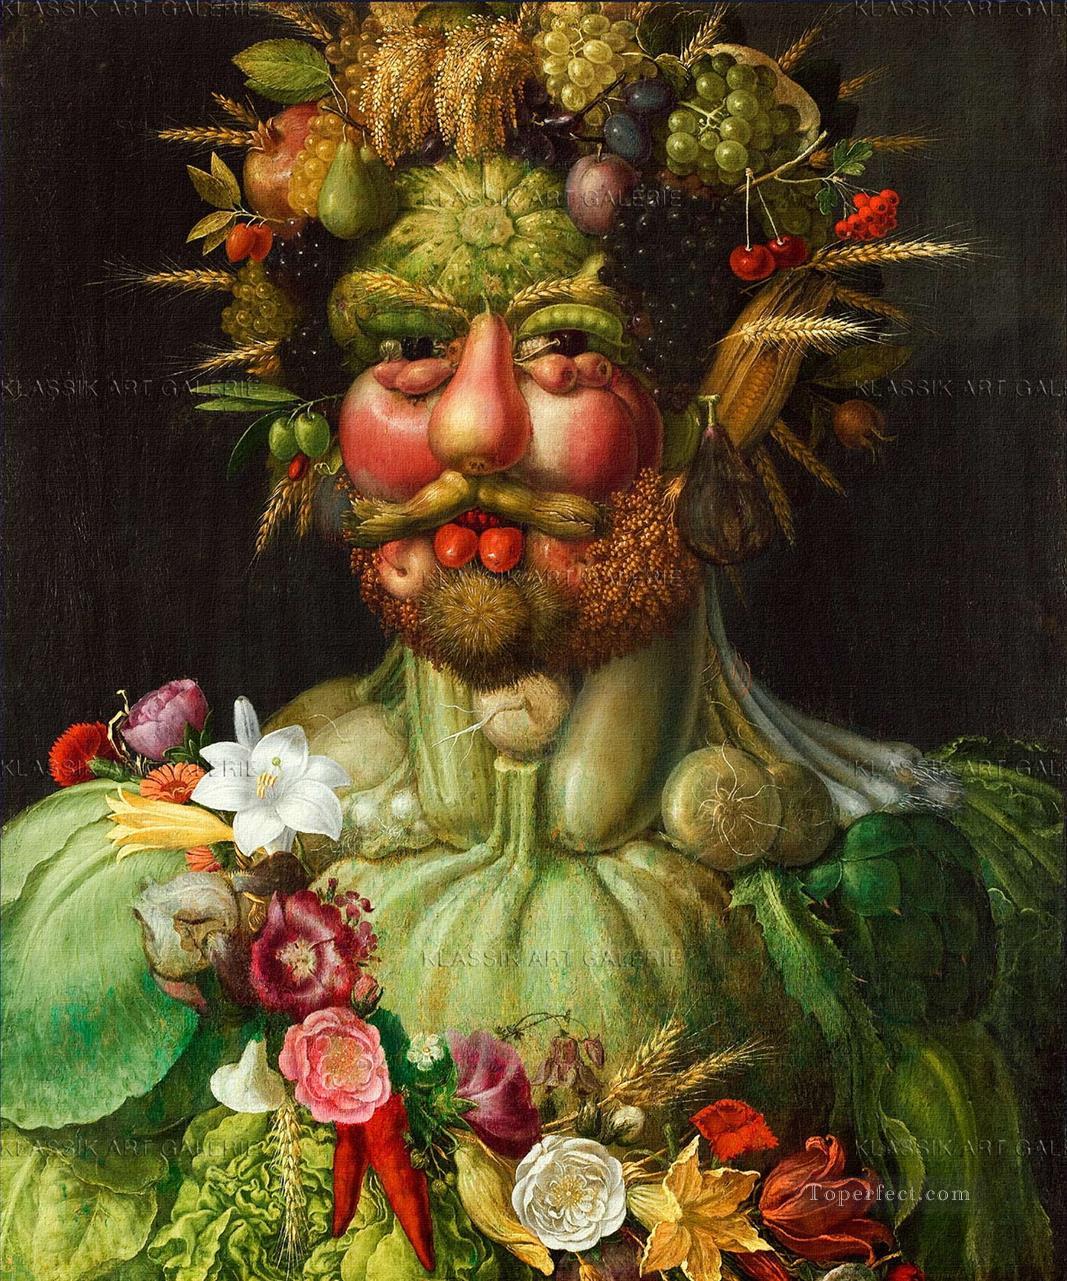 Männer von Gemüse und Blumen Giuseppe Arcimboldo fantastischer Ölgemälde